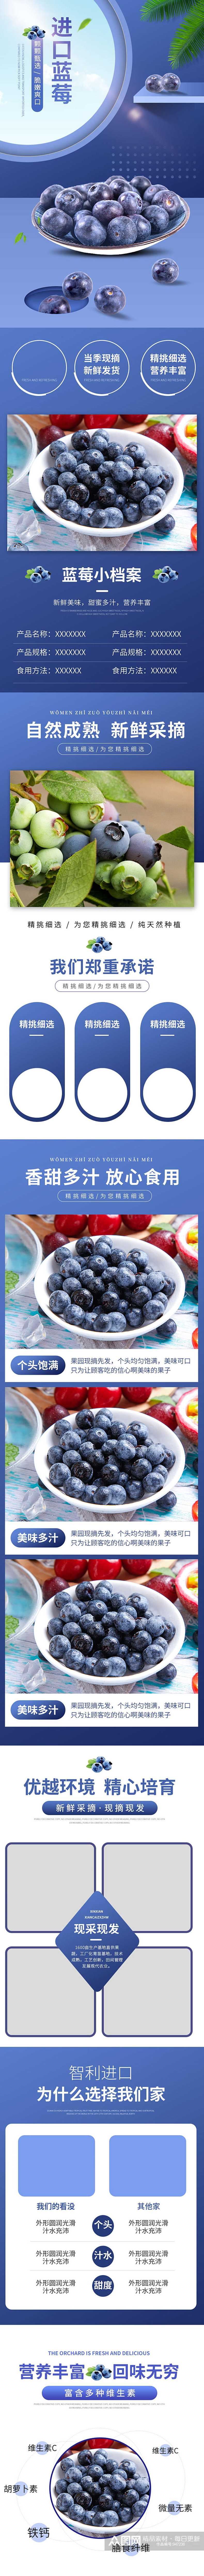 水果生鲜蓝莓详情页模板素材